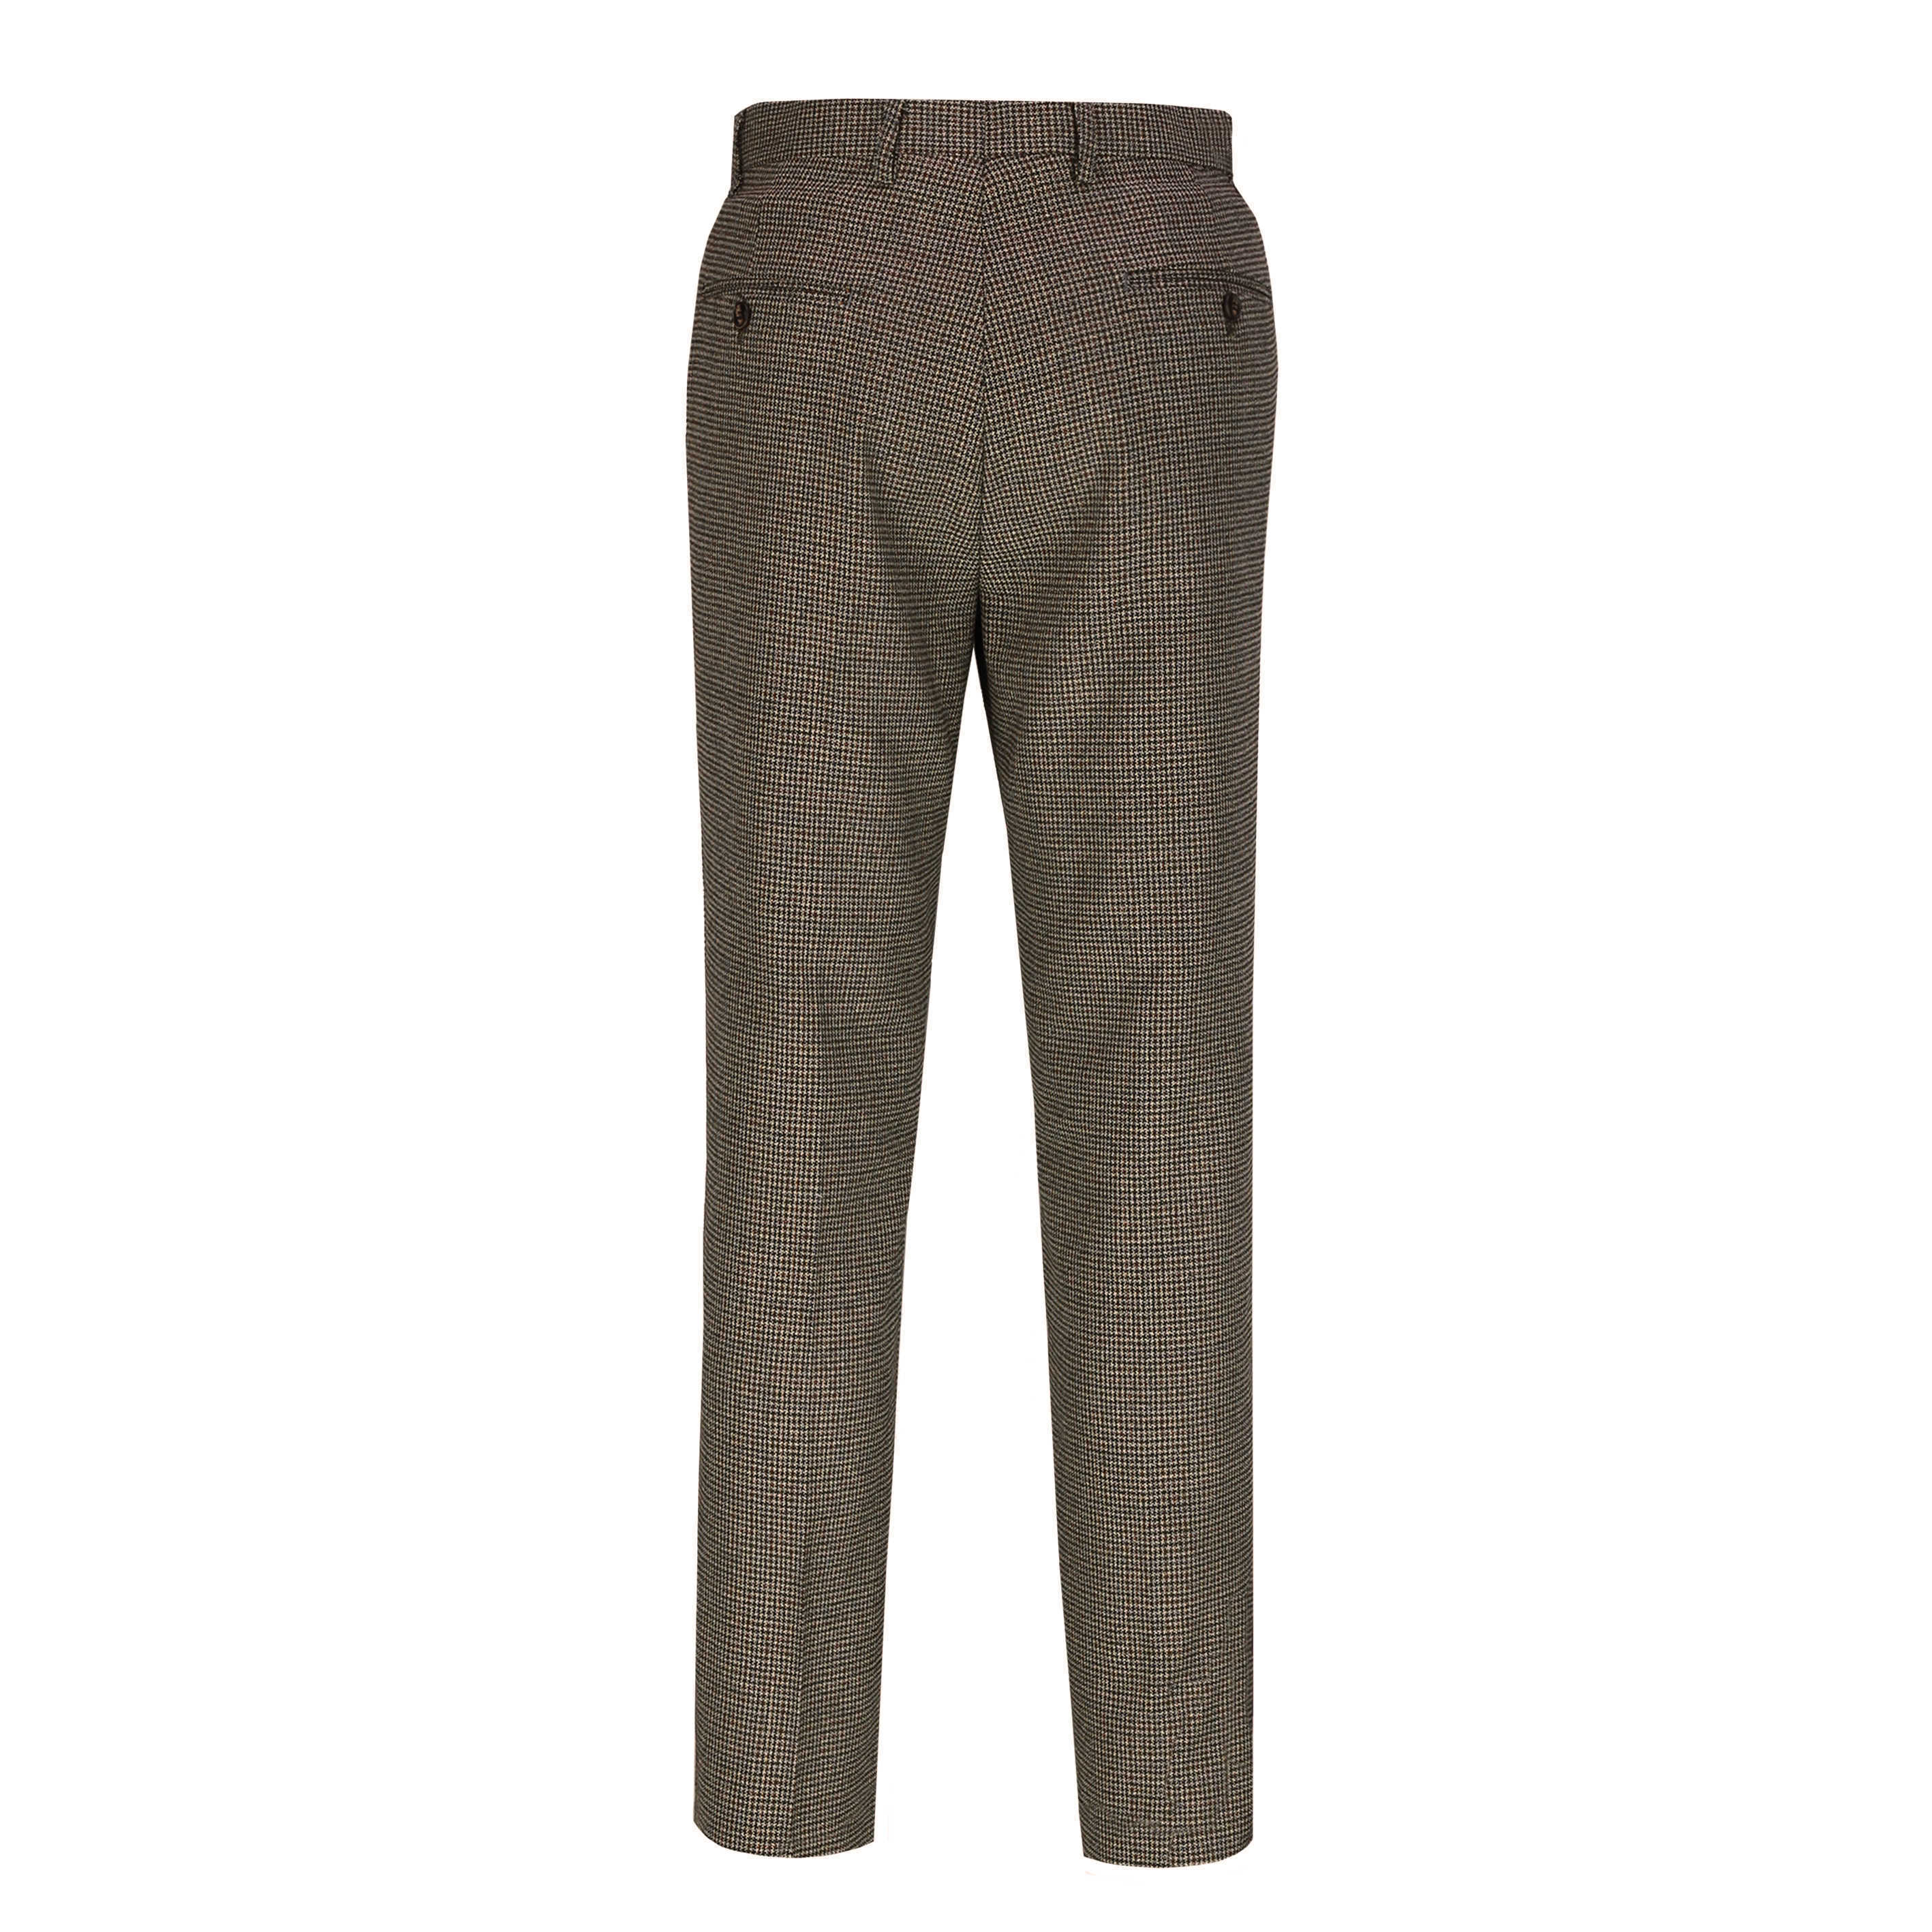 Edgar -  Mens Brown Check Tweed Vintage Tailored Fit Suit Pants